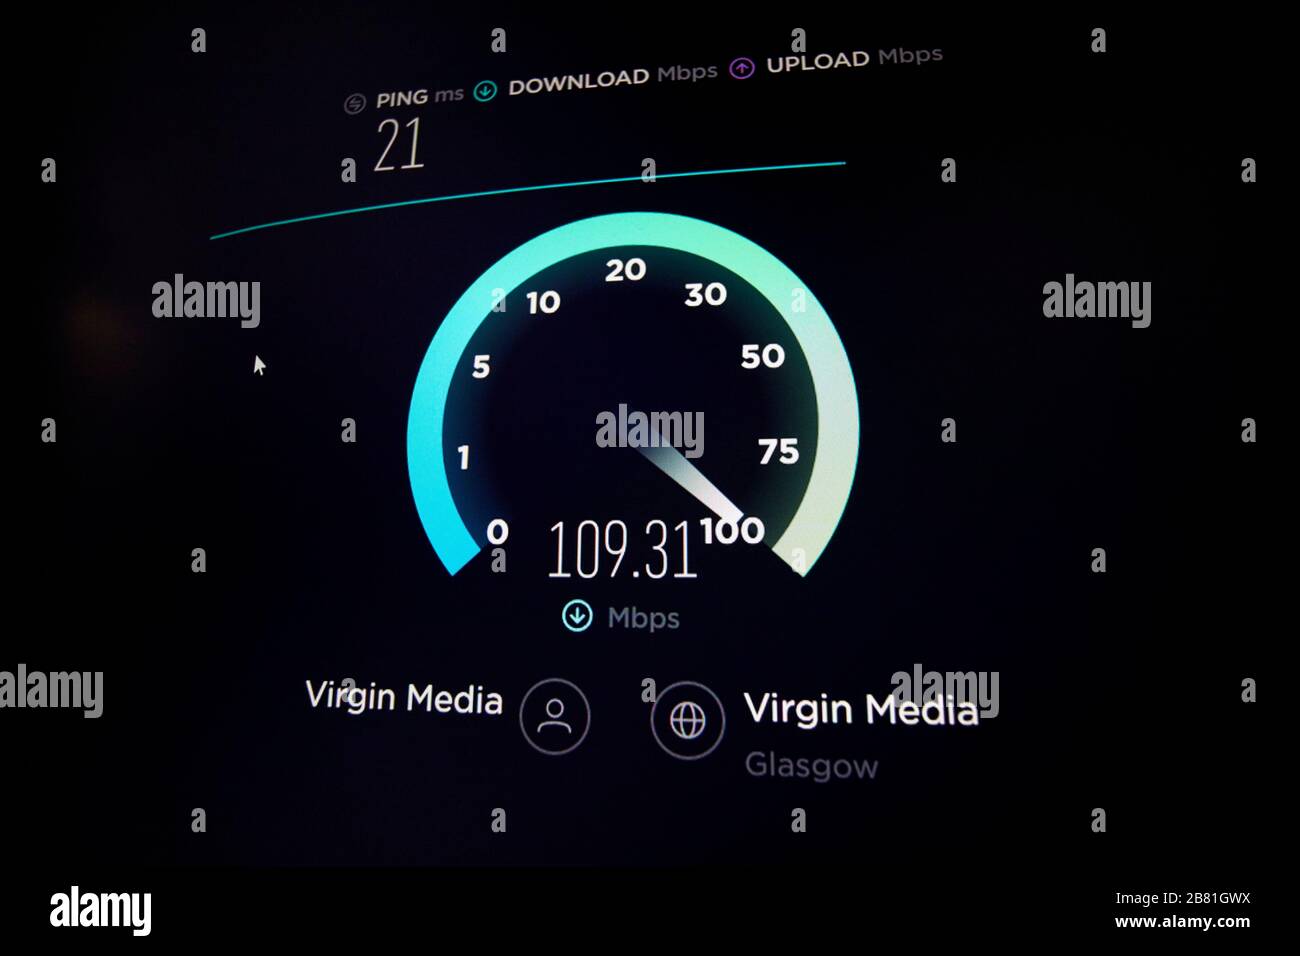 Visualizzazione su schermo di una velocità Internet a banda larga superiore a 100 Mbps utilizzando il più veloce accesso online ai contenuti multimediali vergini Foto Stock